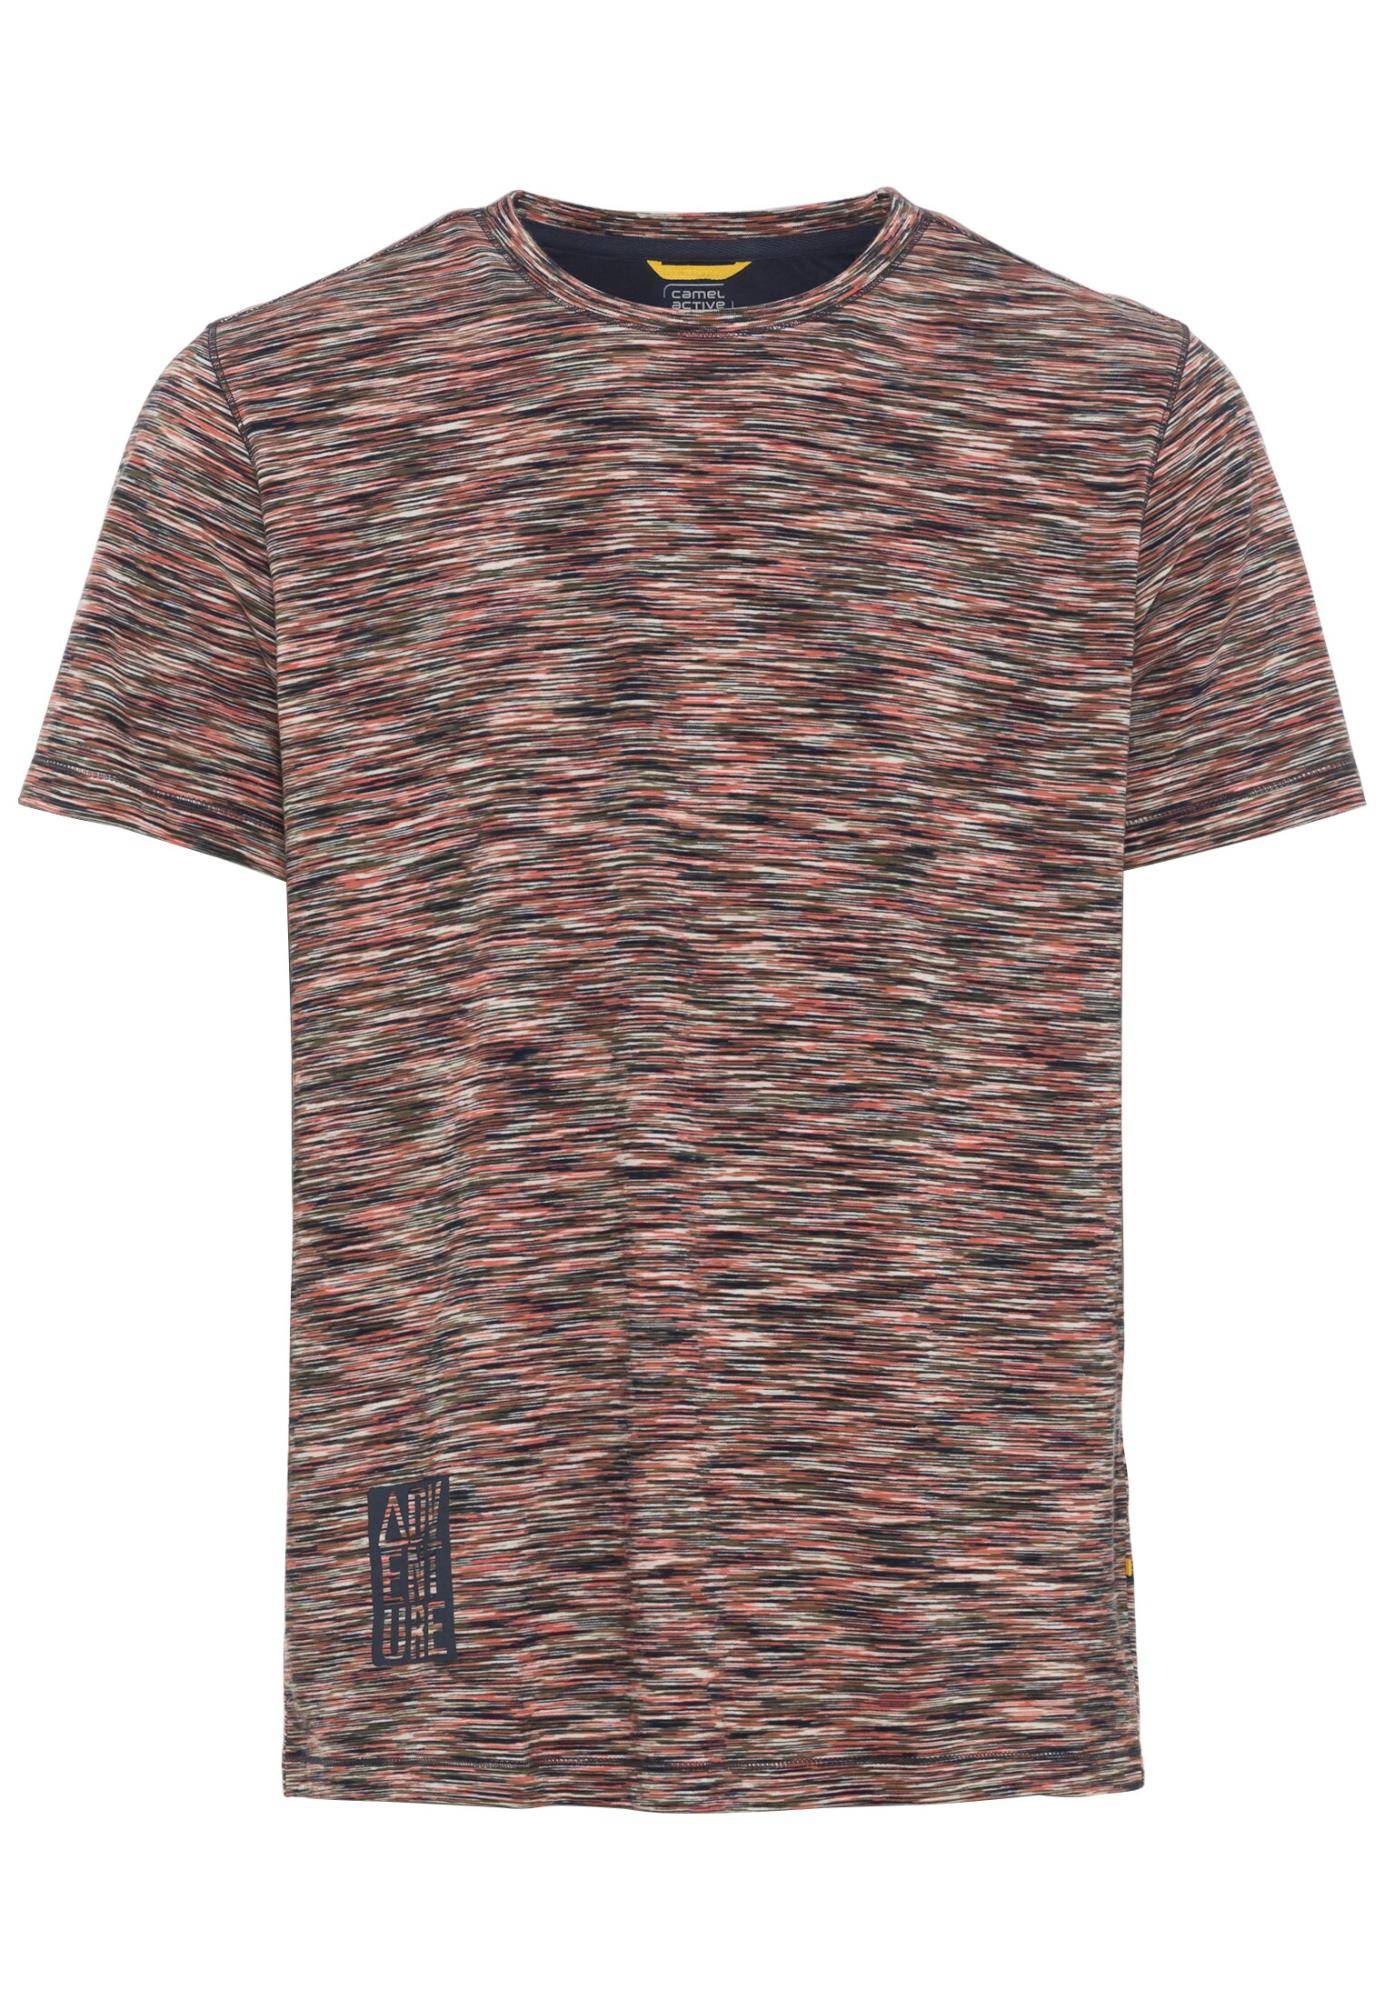 Мужская футболка Camel Active, коралловая, цвет коралловый, размер 52 - фото 1